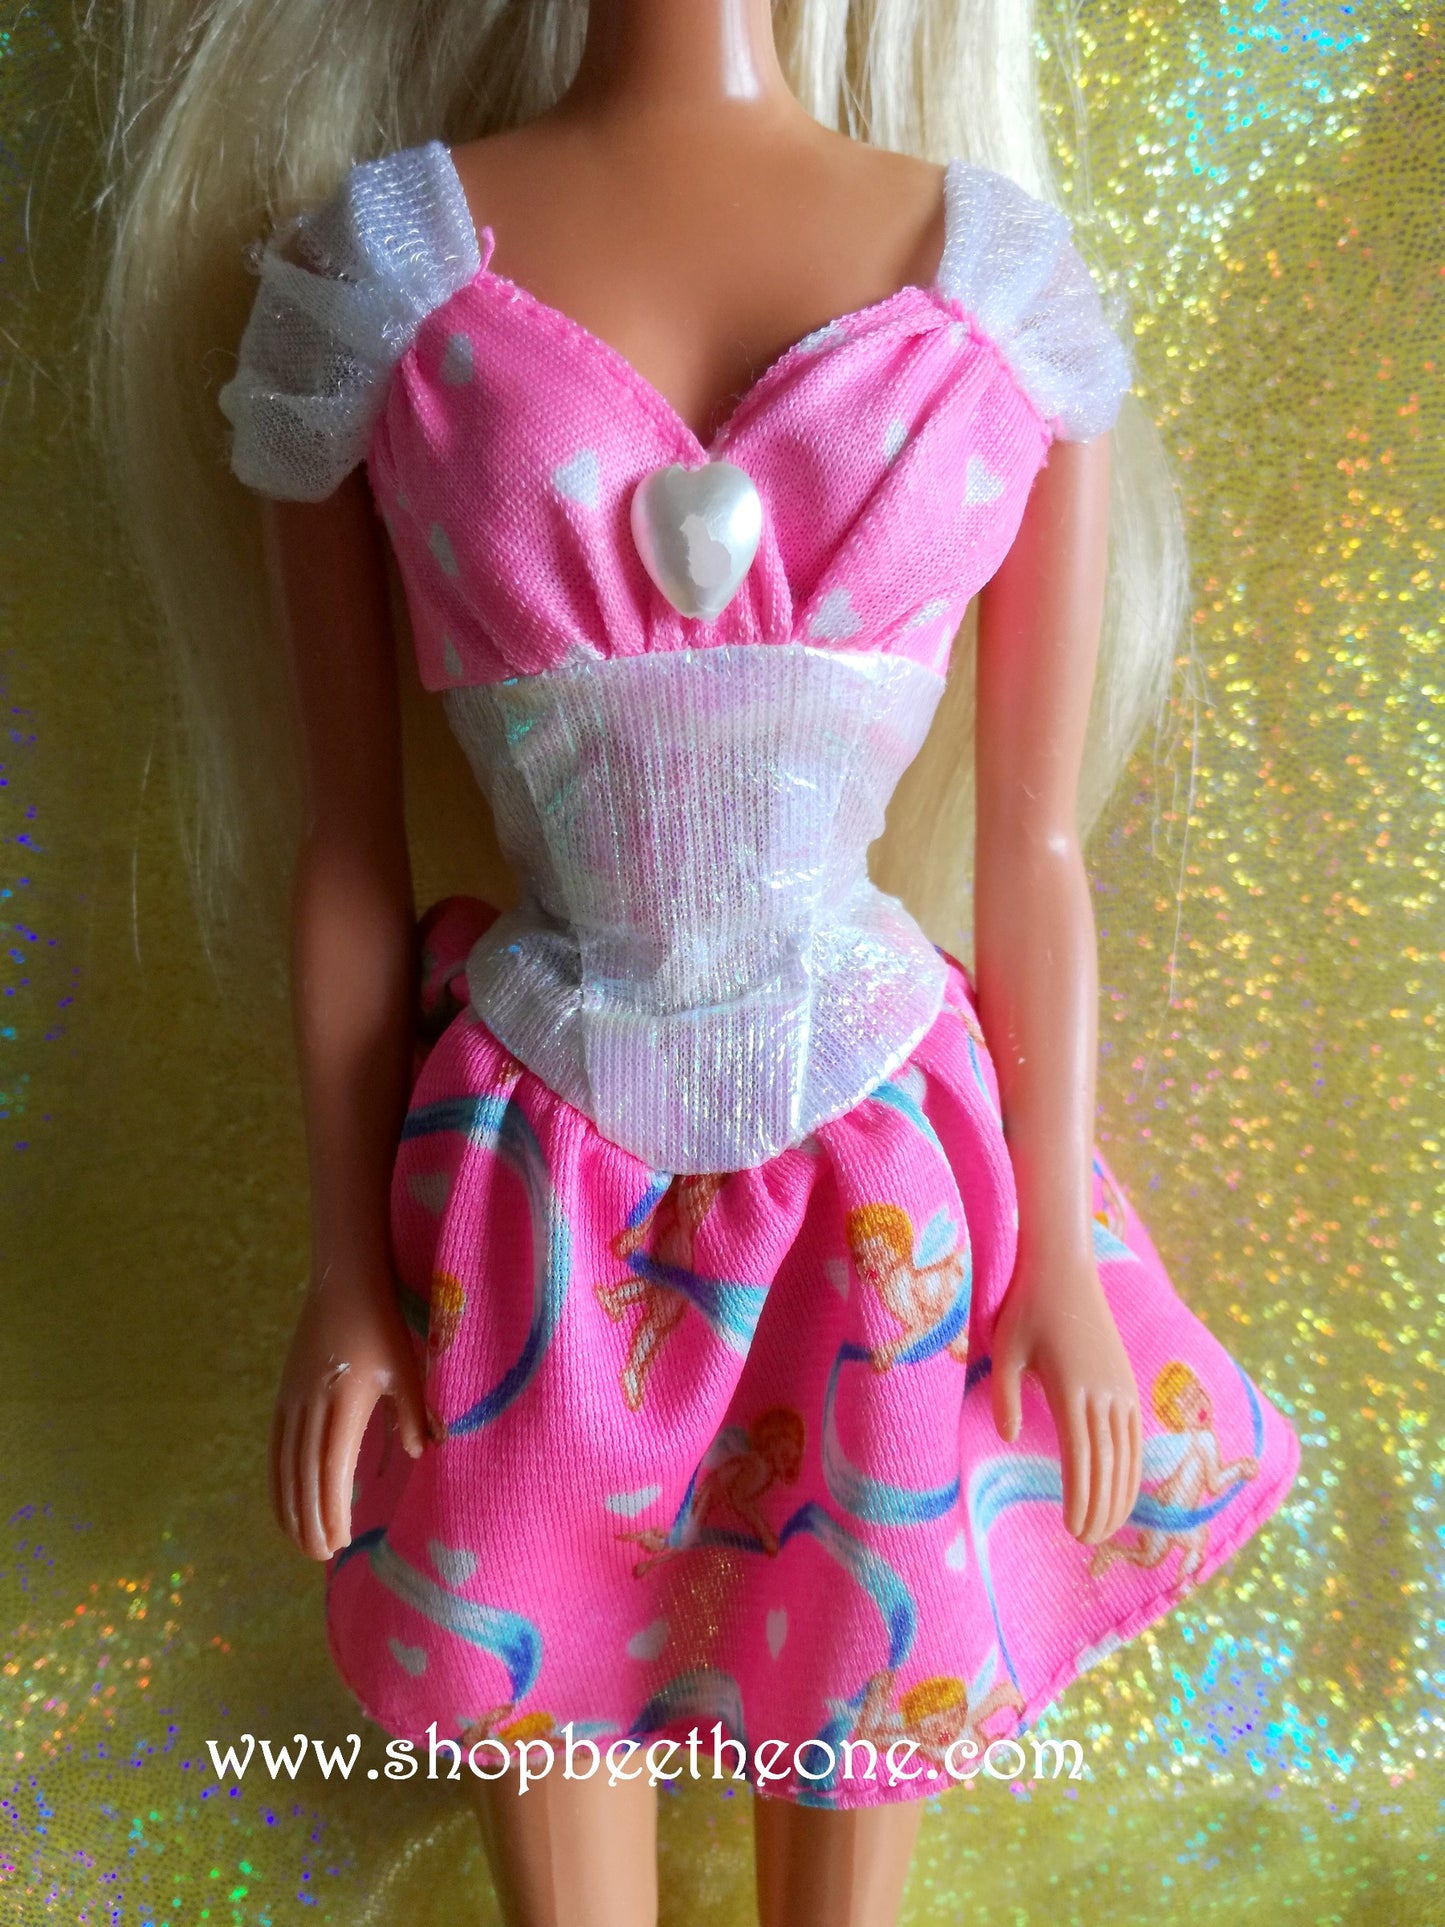 My First Barbie Bijoux Fantaisie (Jewelry Fun) - Mattel 1996 - Poupée - Robe